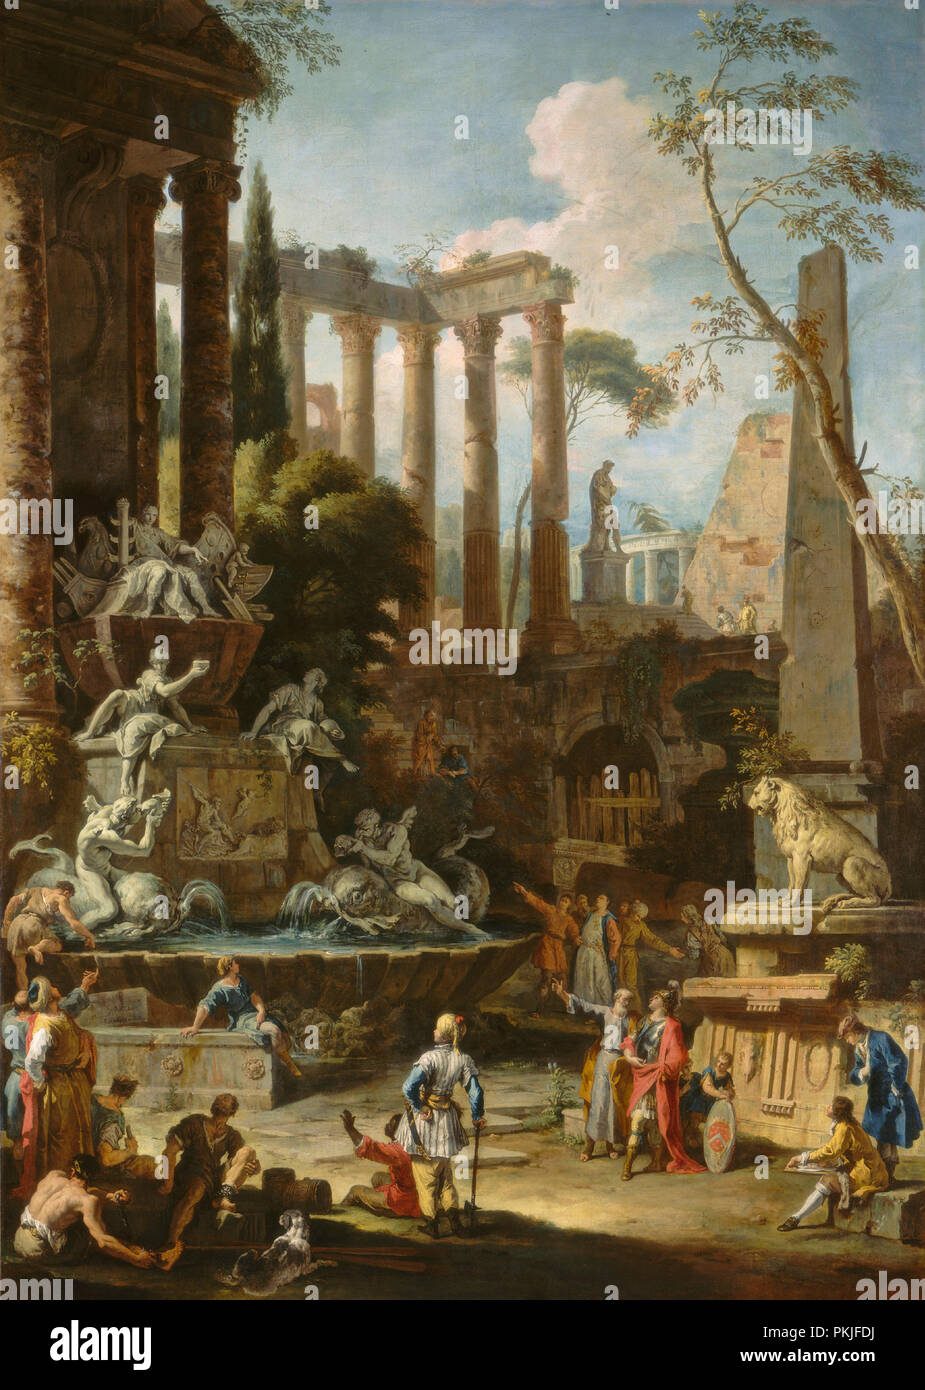 Memoriale di Ammiraglio Sir Clowdisley Shovell. Data: 1725. Dimensioni: complessivo: 222.1 x 158.8 cm (87 7/16 x 62 1/2 in.) incorniciato: 251.3 x 188,4 x 10,8 cm (98 15/16 x 74 3/16 x 4 1/4 in.). Medium: olio su tela. Museo: National Gallery of Art di Washington DC. Autore: Sebastiano Ricci e Marco Ricci. Foto Stock